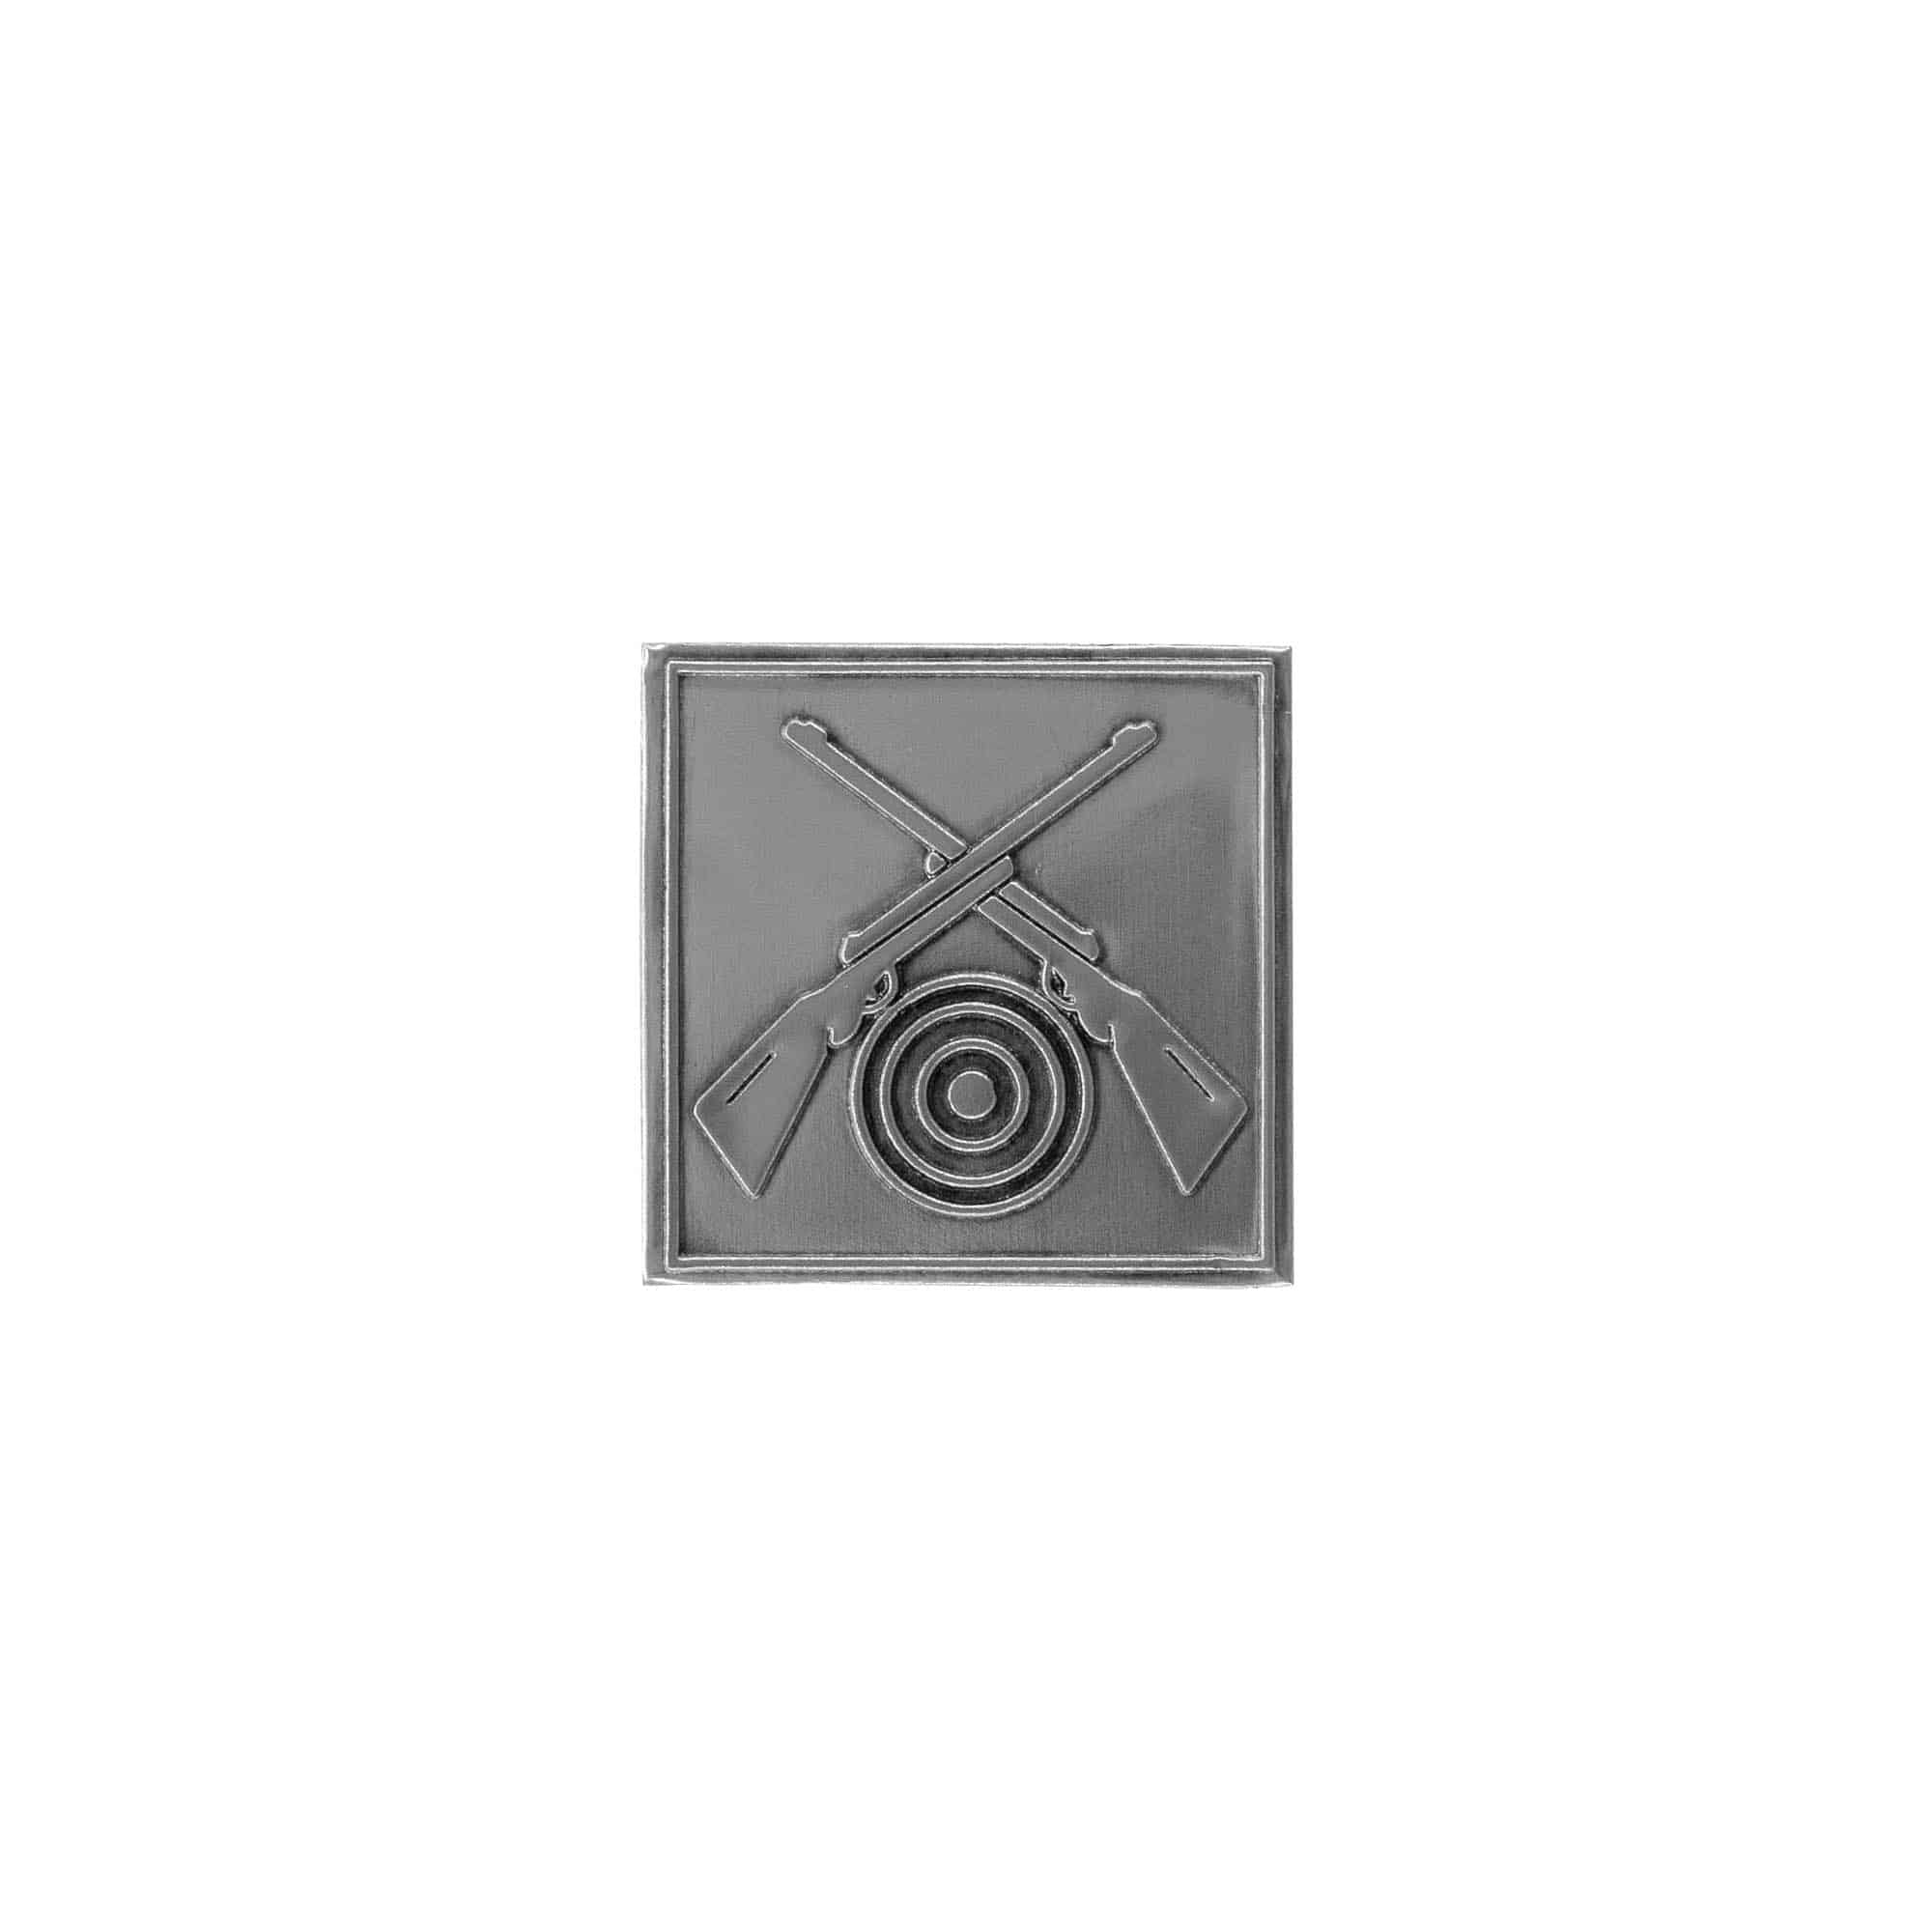 Etykieta cynowa 'Strzelcy', kwadratowa, metal, kolor srebrny